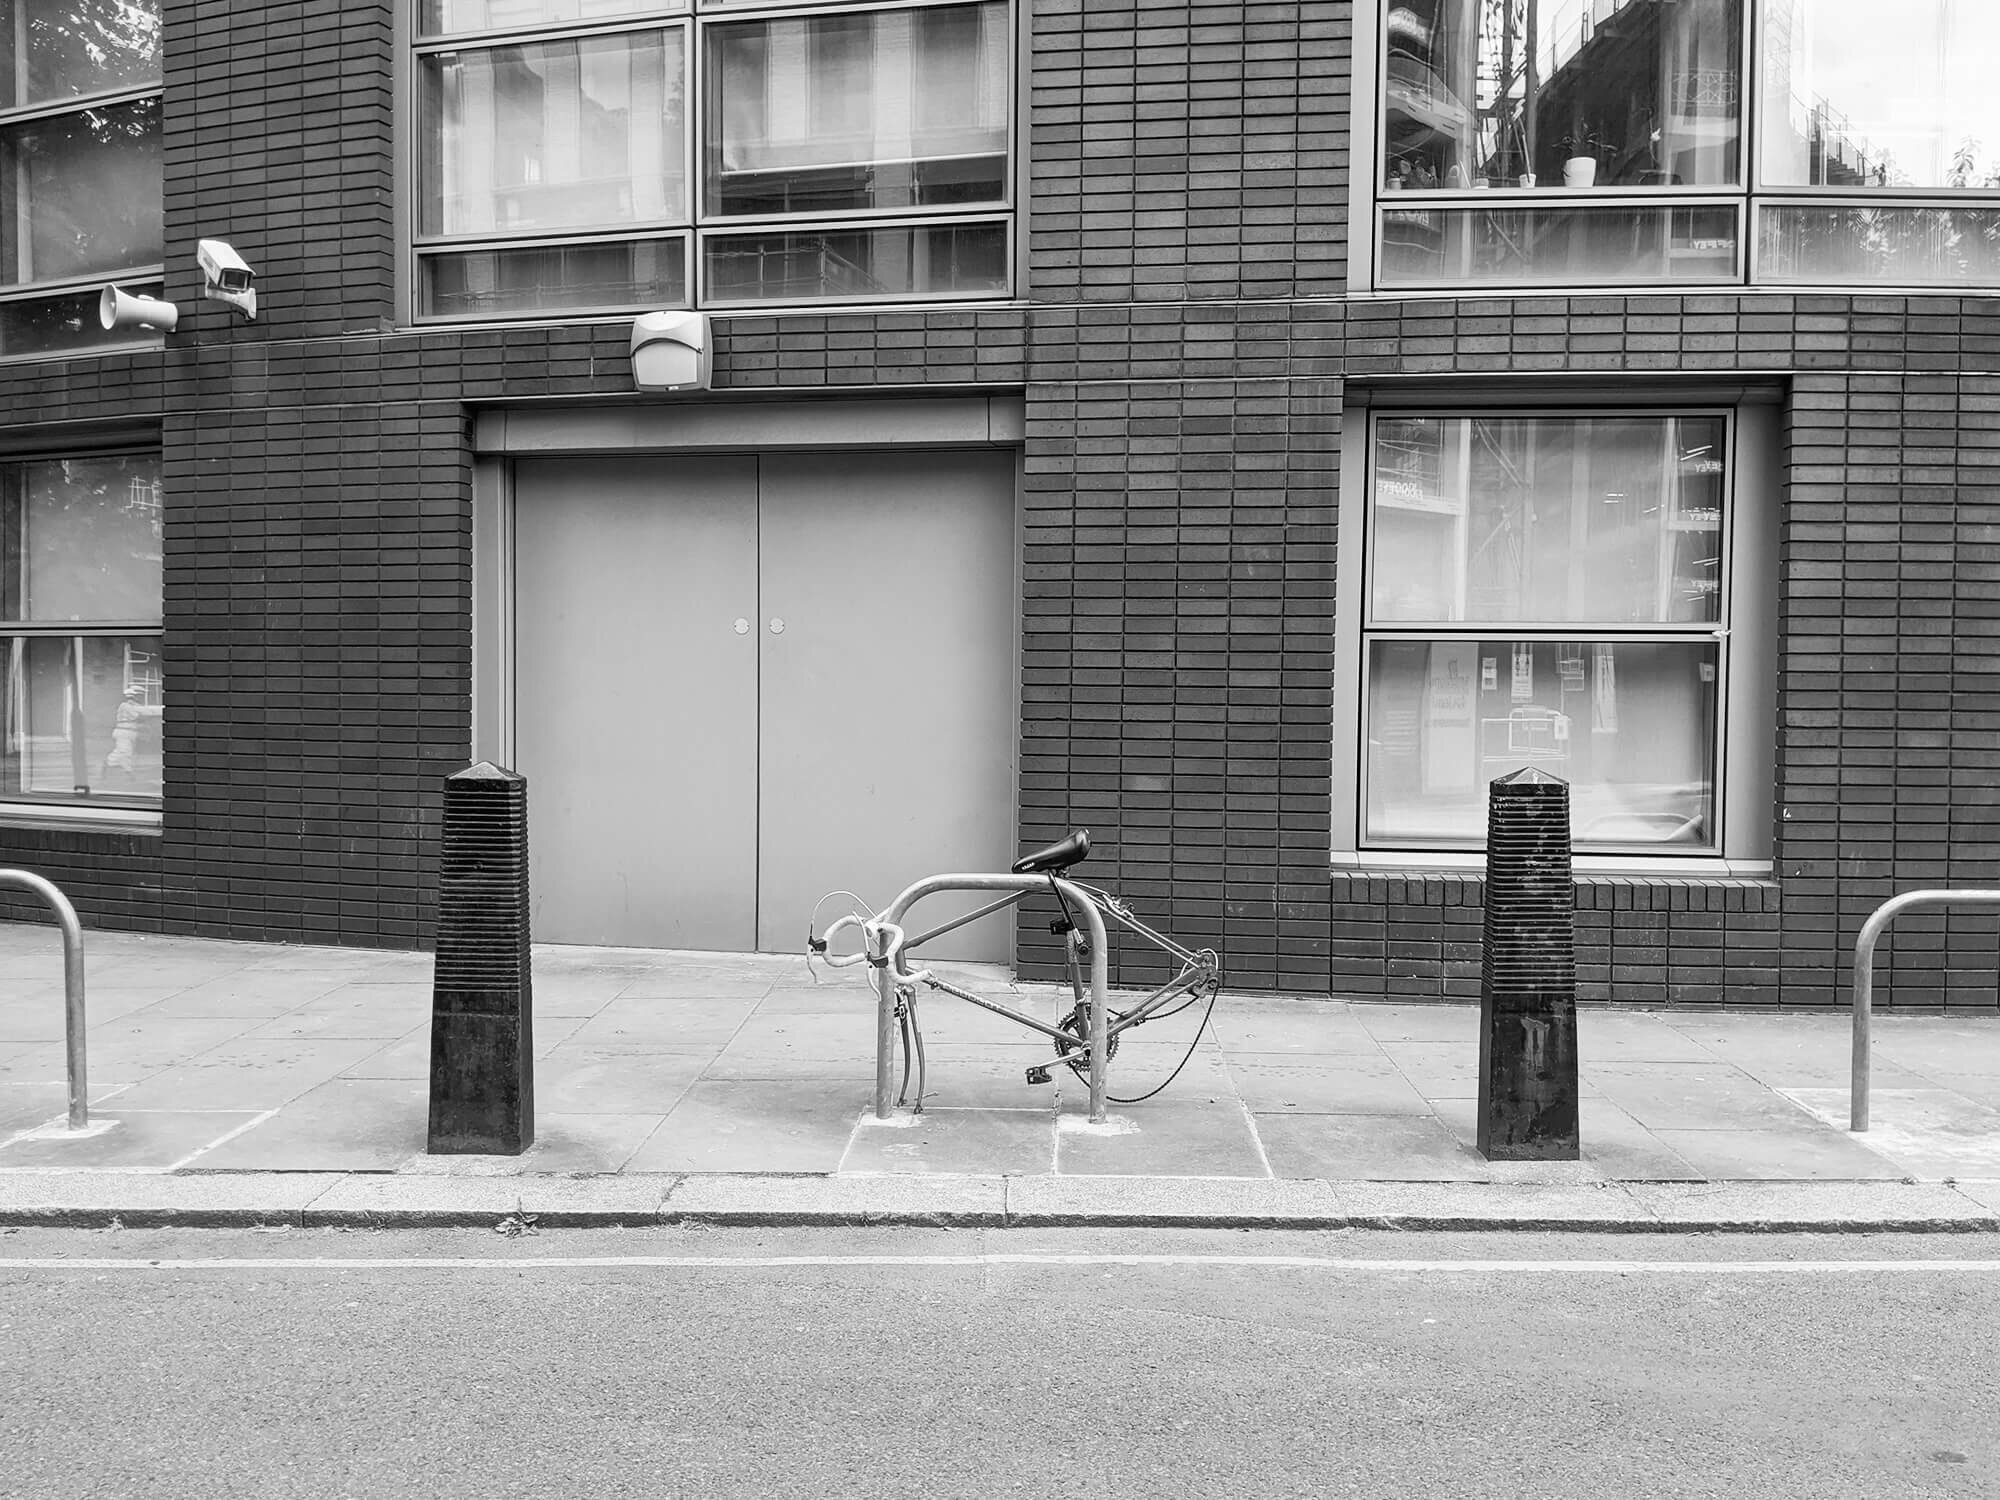 Discarded bike in London city. Bike missing wheels.